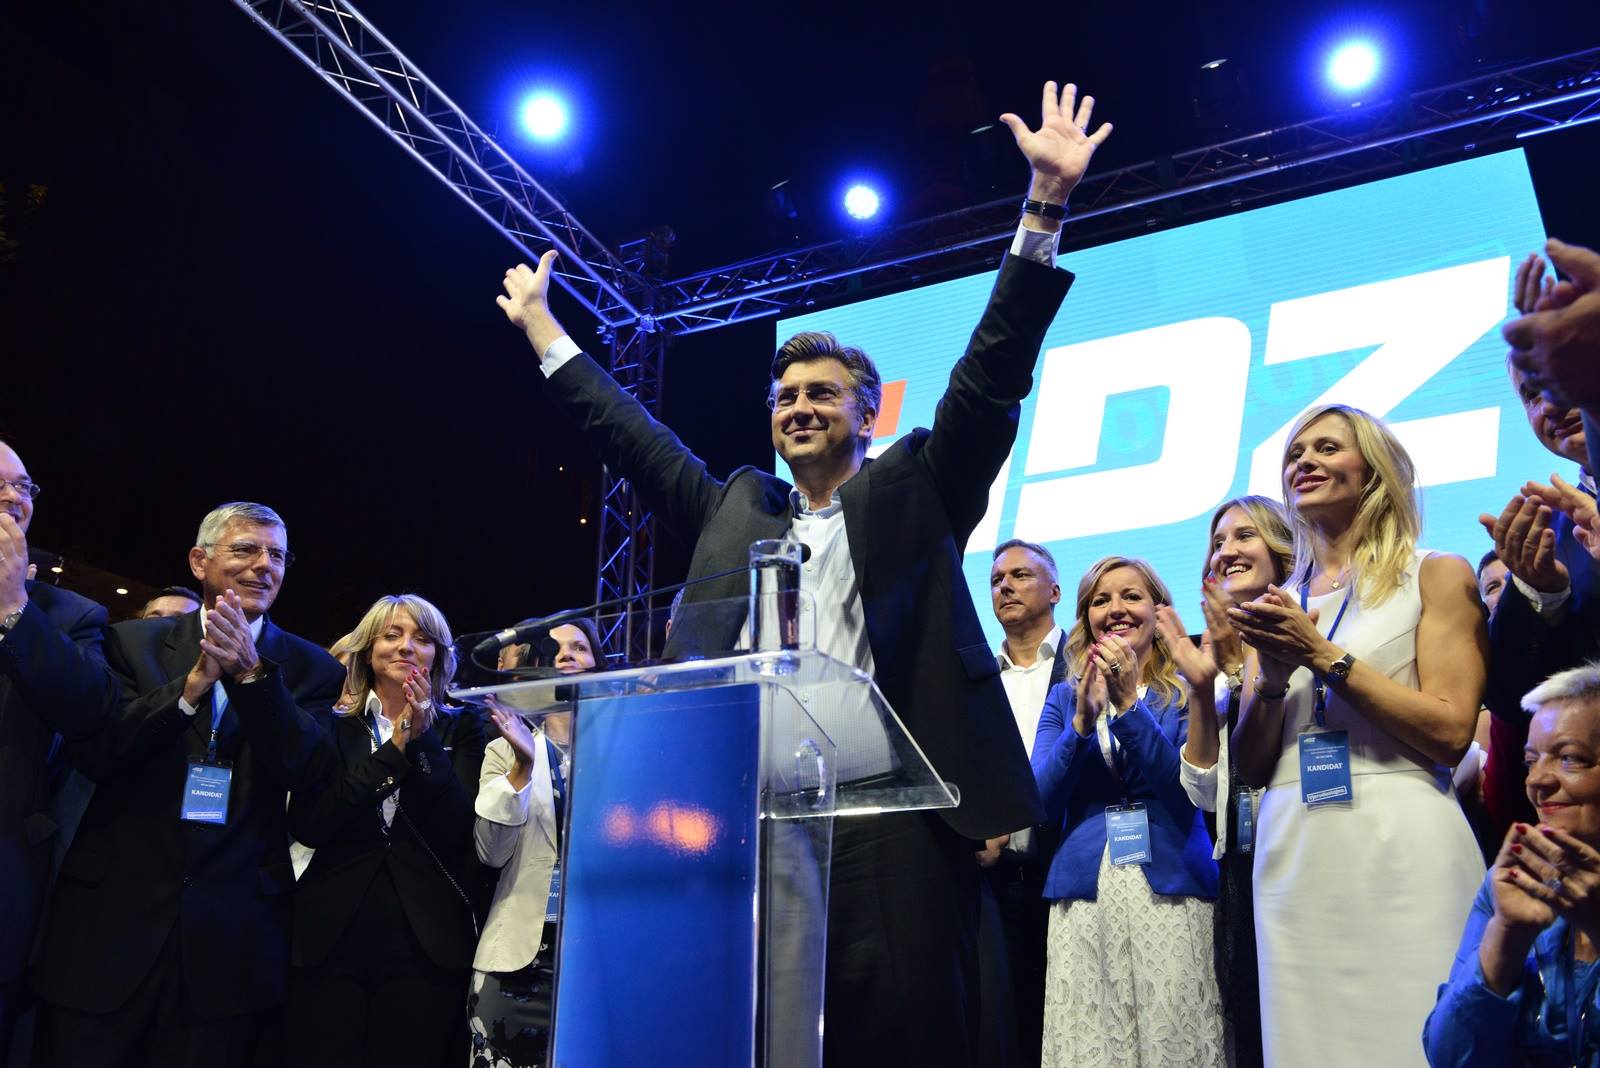 HDZ-Chef Andrej Plenkovic führt seine Partei zum Sieg während der Parlamentswahl 2016 in Kroatien